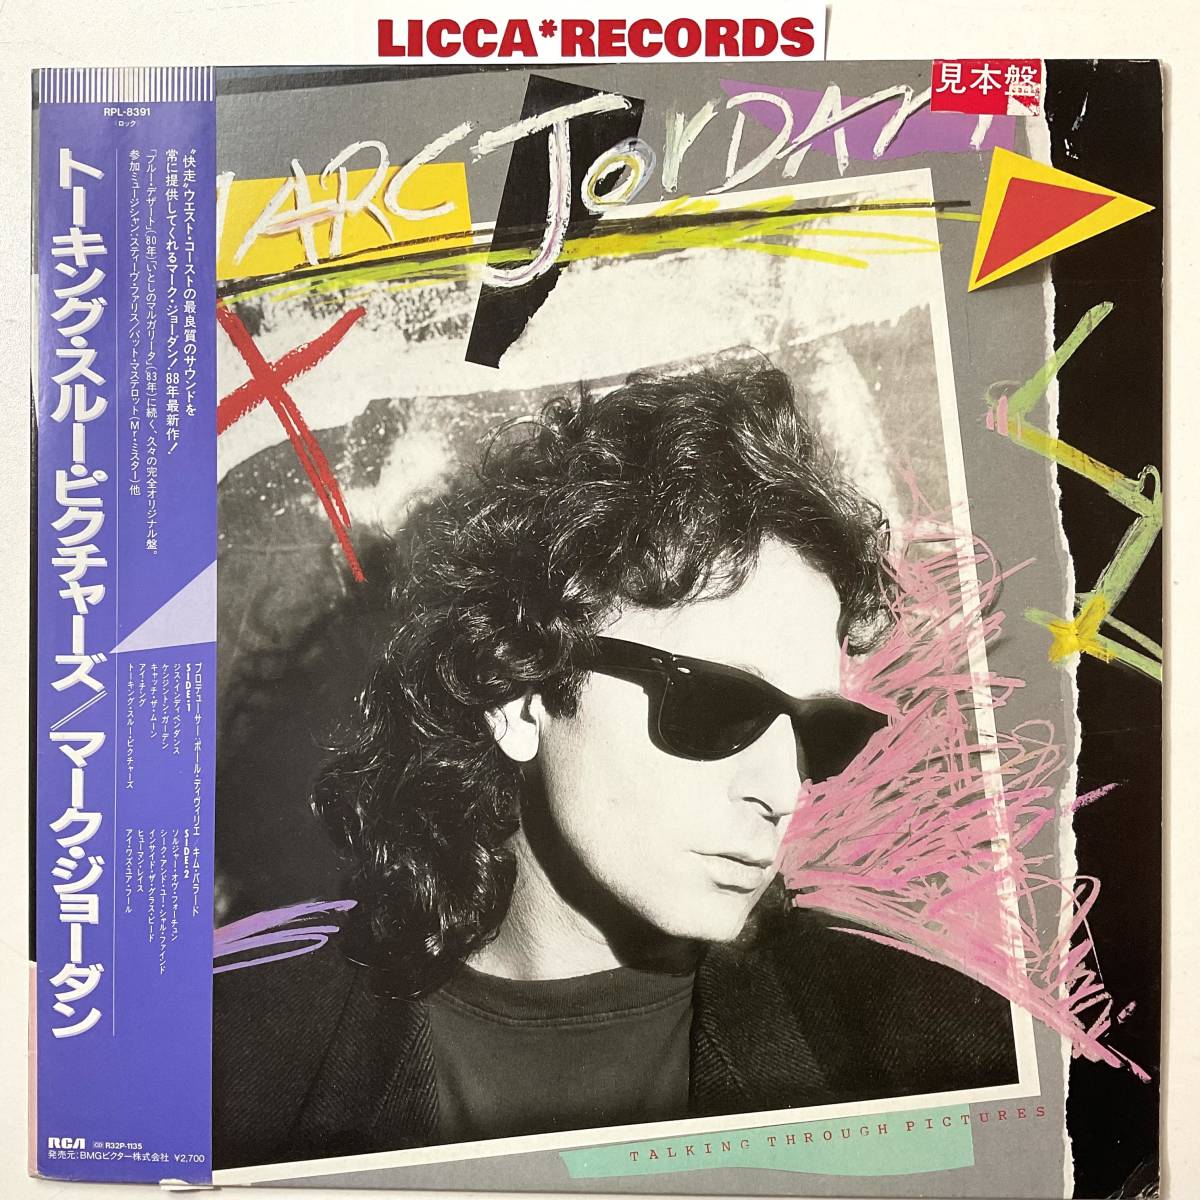 何枚でも同送料 *LP レコード Marc Jordan Talking Through Pictures JAPAN PROMO ORIGINAL w/OBI RCA RPL-8391 LICCA*RECORDS 415_画像1